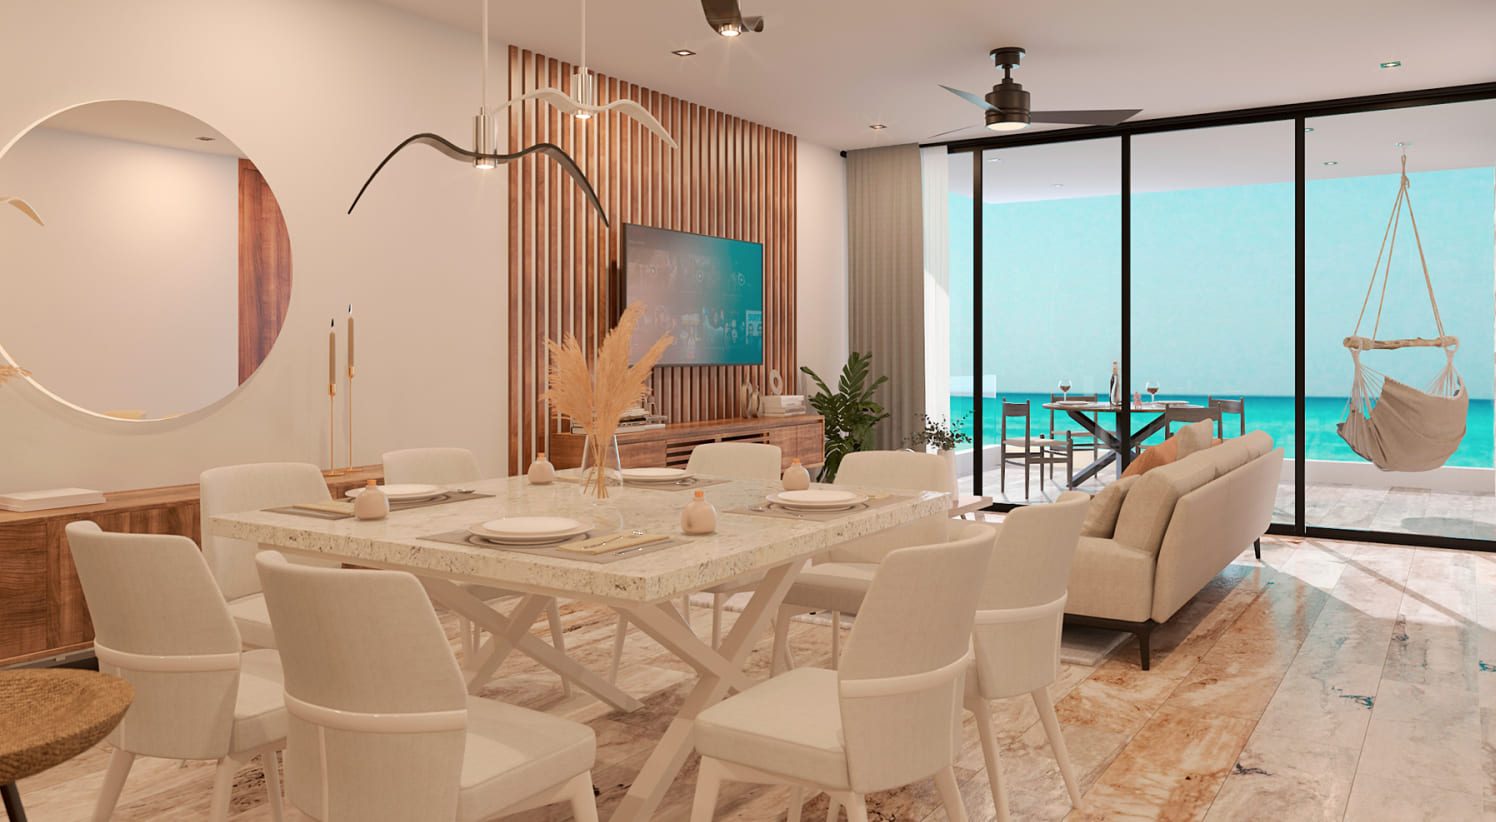 Casa con alberca privada, doble altura, jardin interior, bar con columpios, cerca de Paseo Montejo, en venta Merida, Yucatan